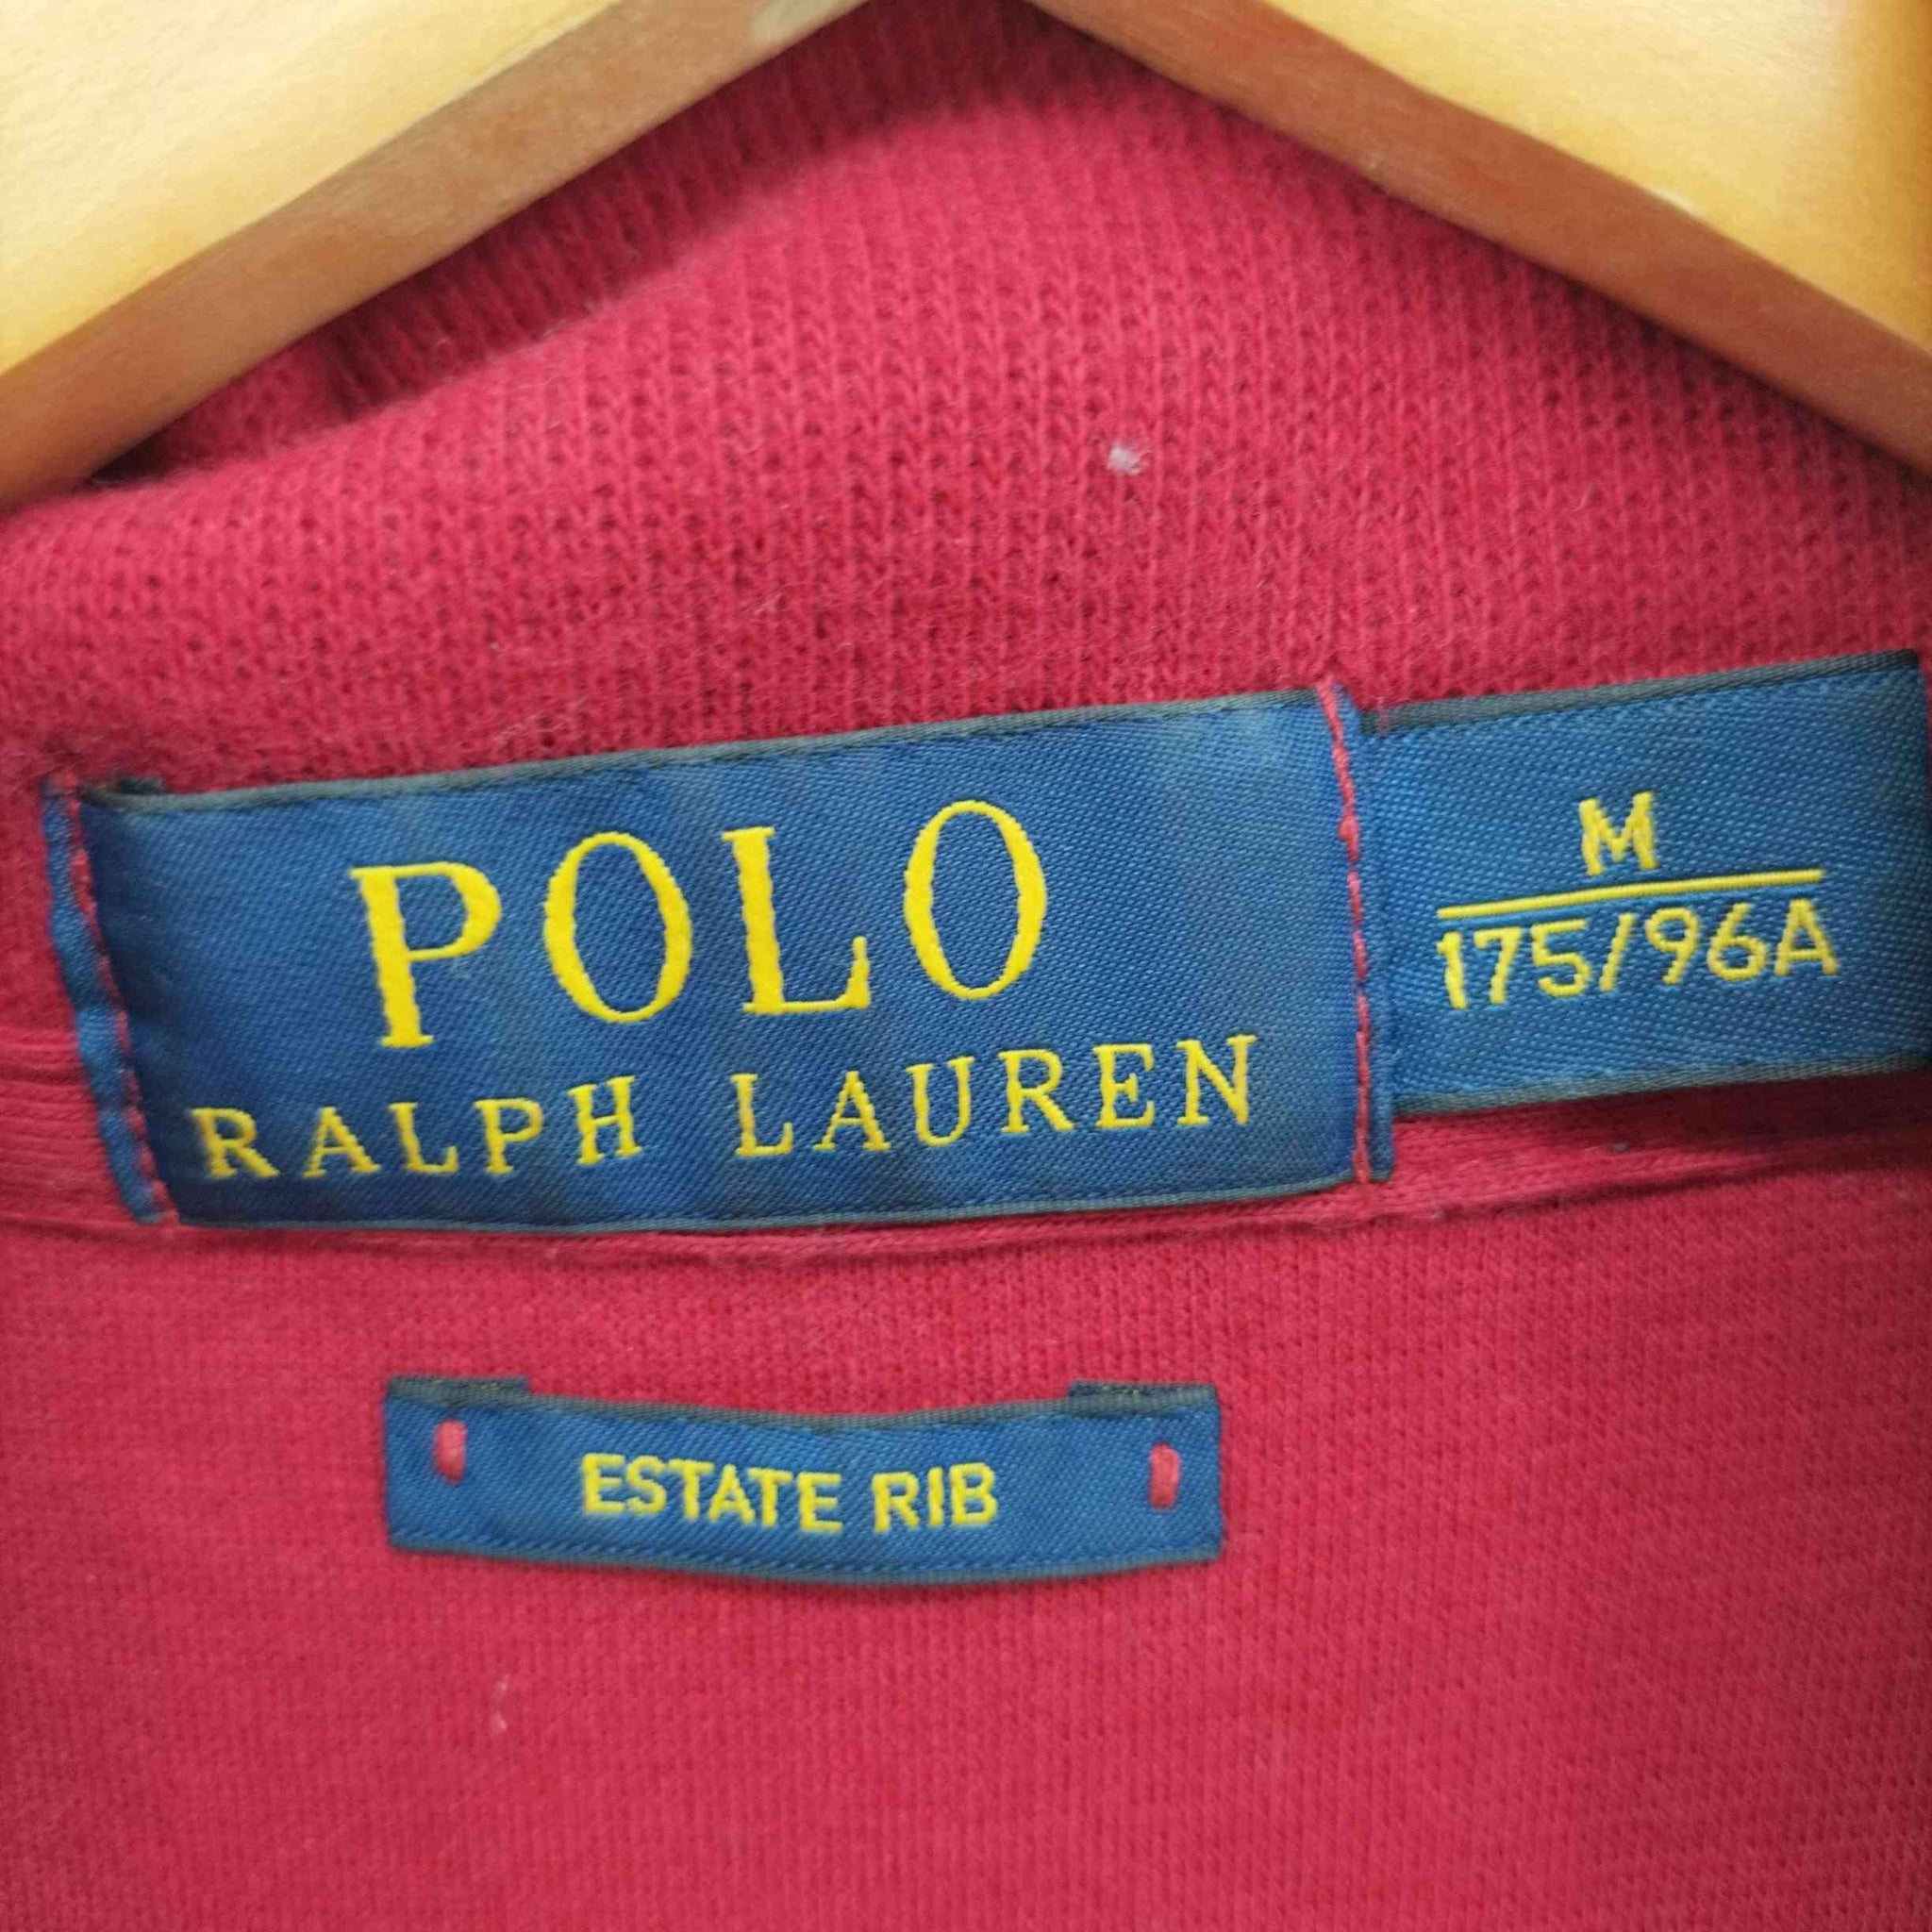 POLO RALPH LAUREN(ポロラルフローレン)ポニー刺繍 ハーフジップ ハイネック トレーナー